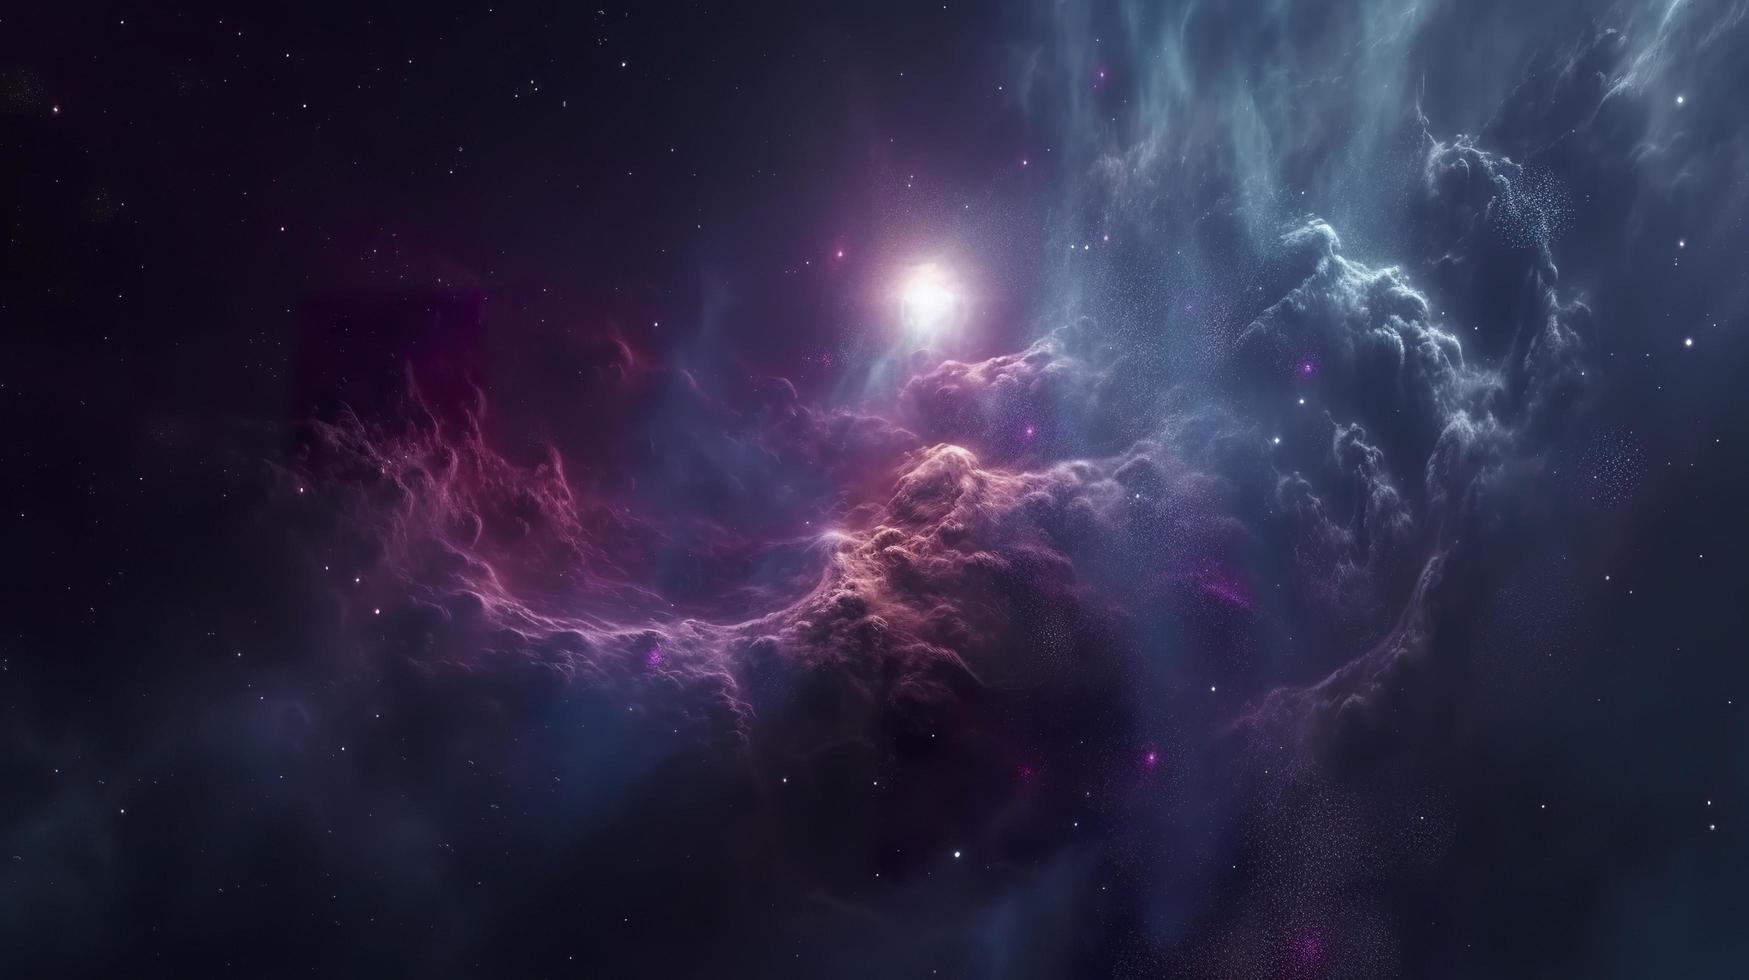 concepto de nebulosa con galaxias en profundo espacio cosmos descubrimiento exterior espacio y estrellas, generar ai foto